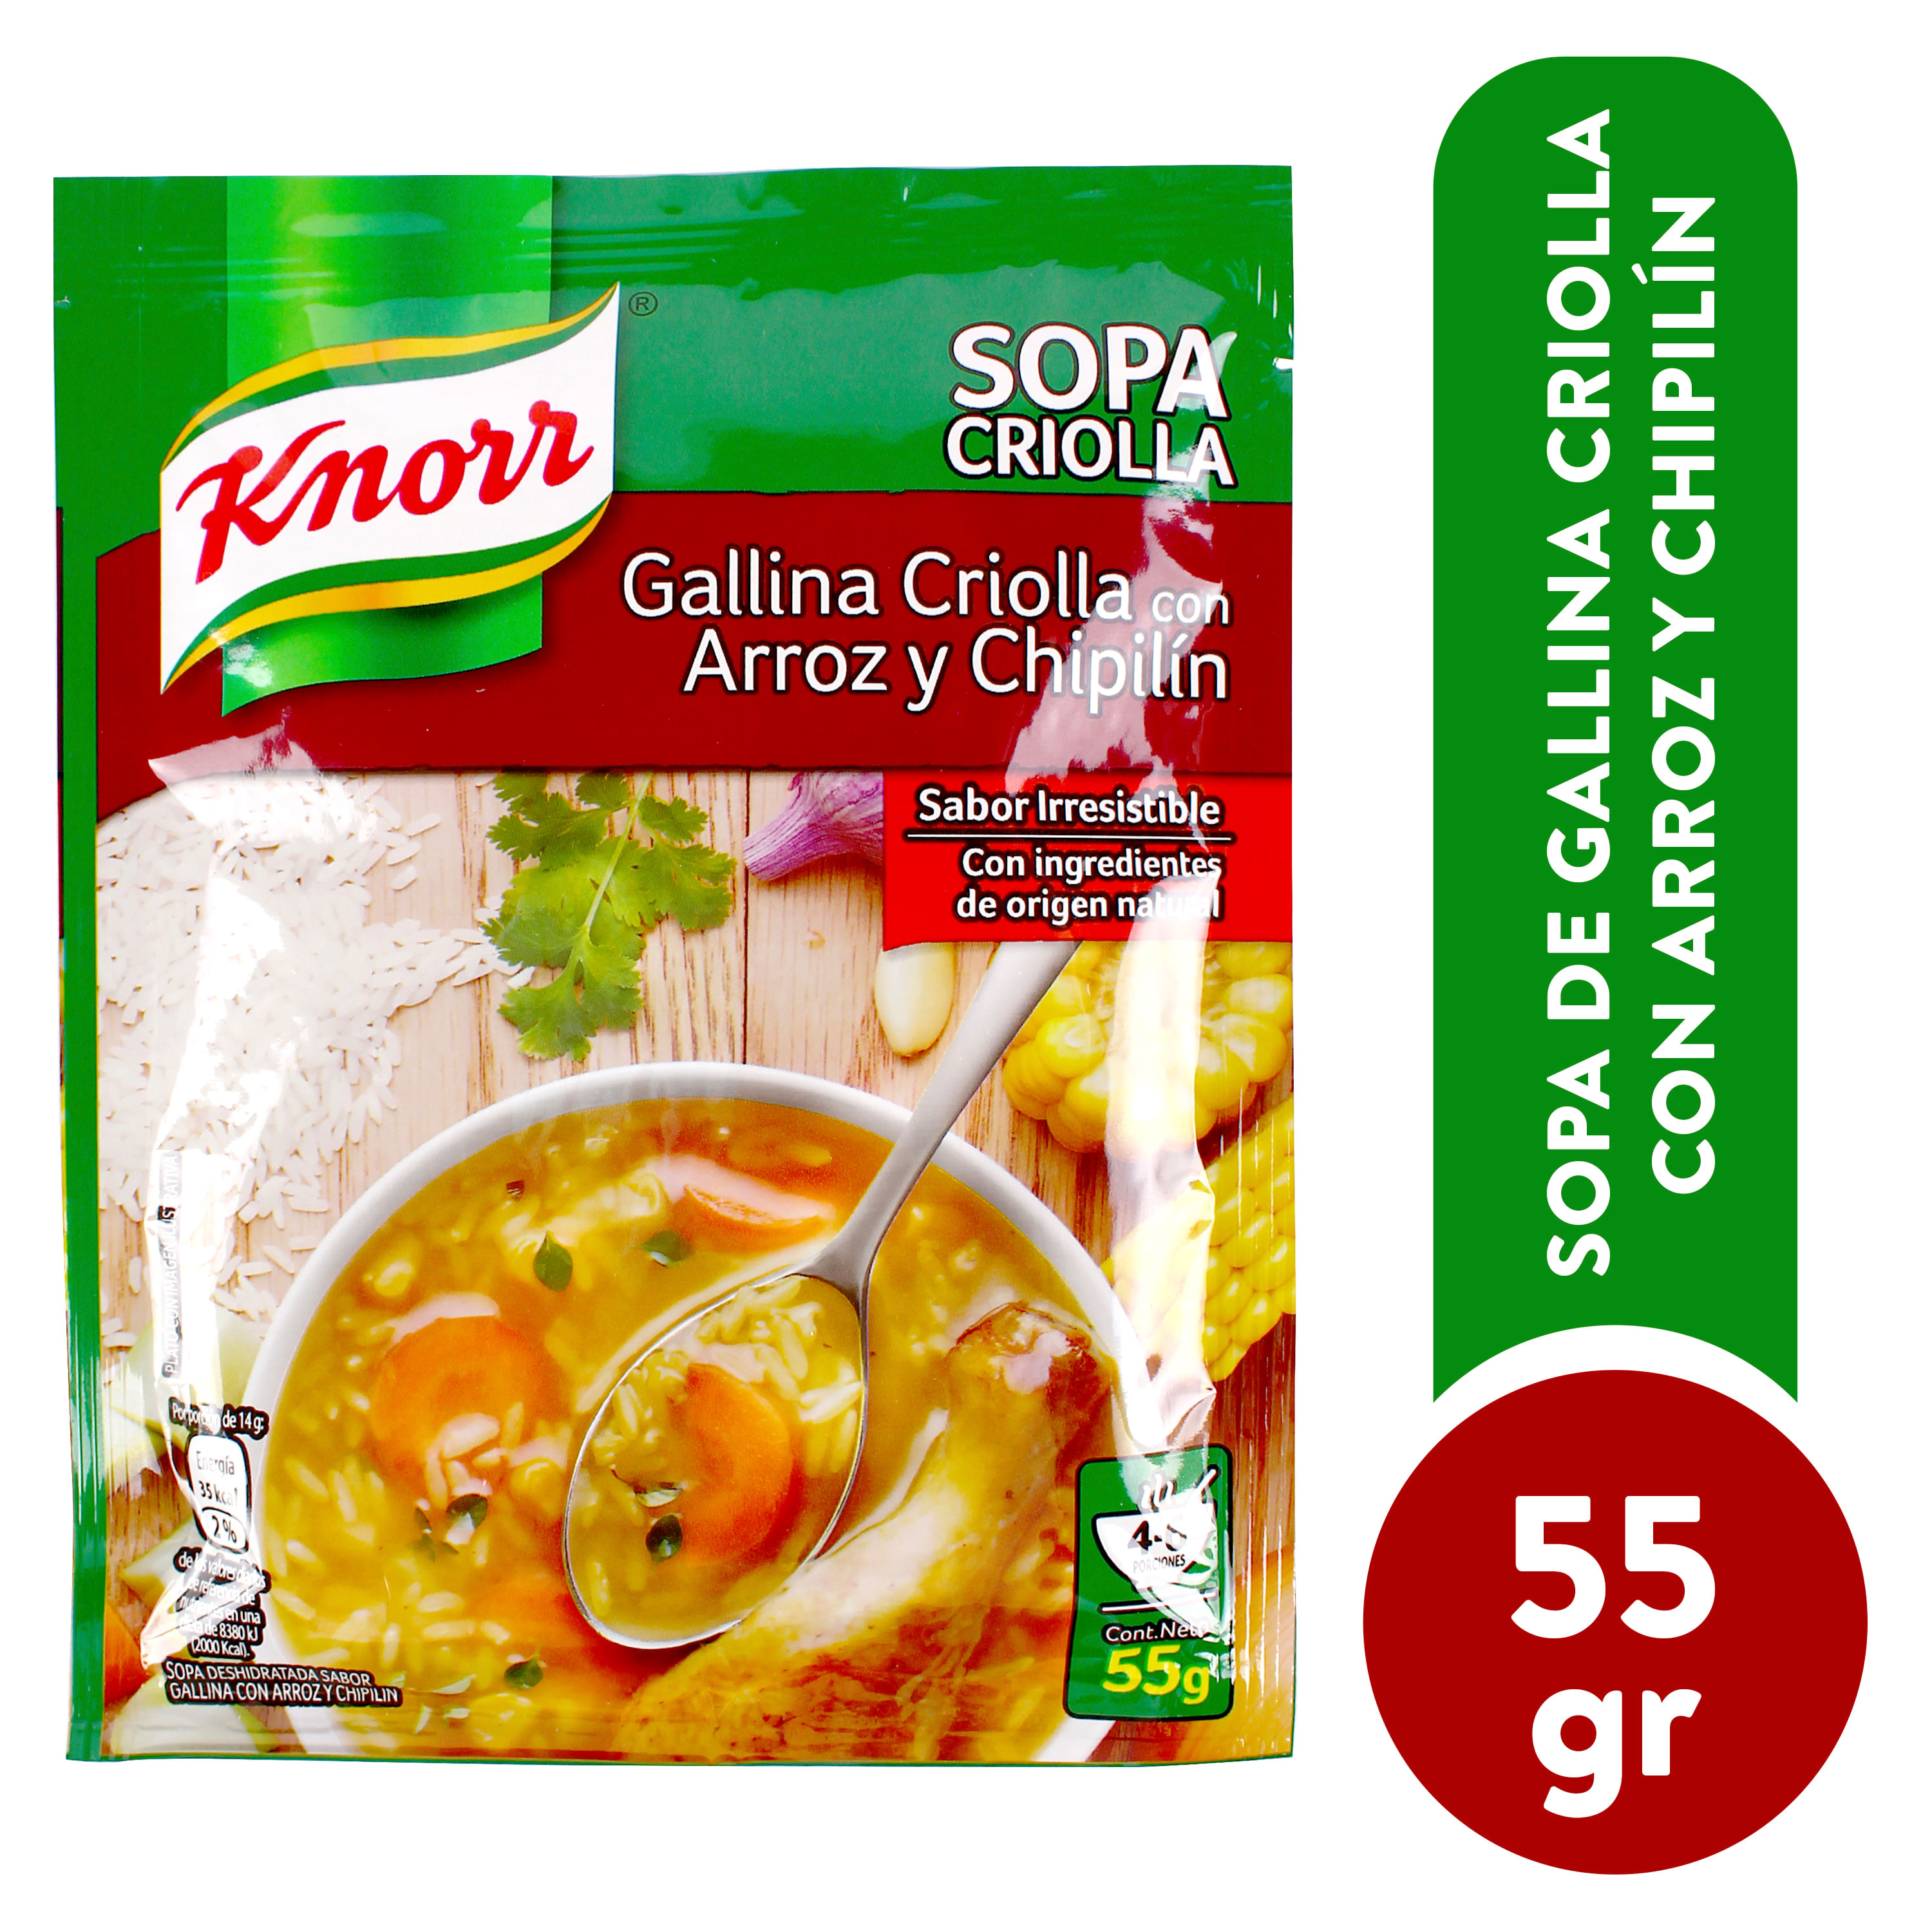 Sopa-Knorr-Gallina-Arroz-Chipilin-55gr-1-1362